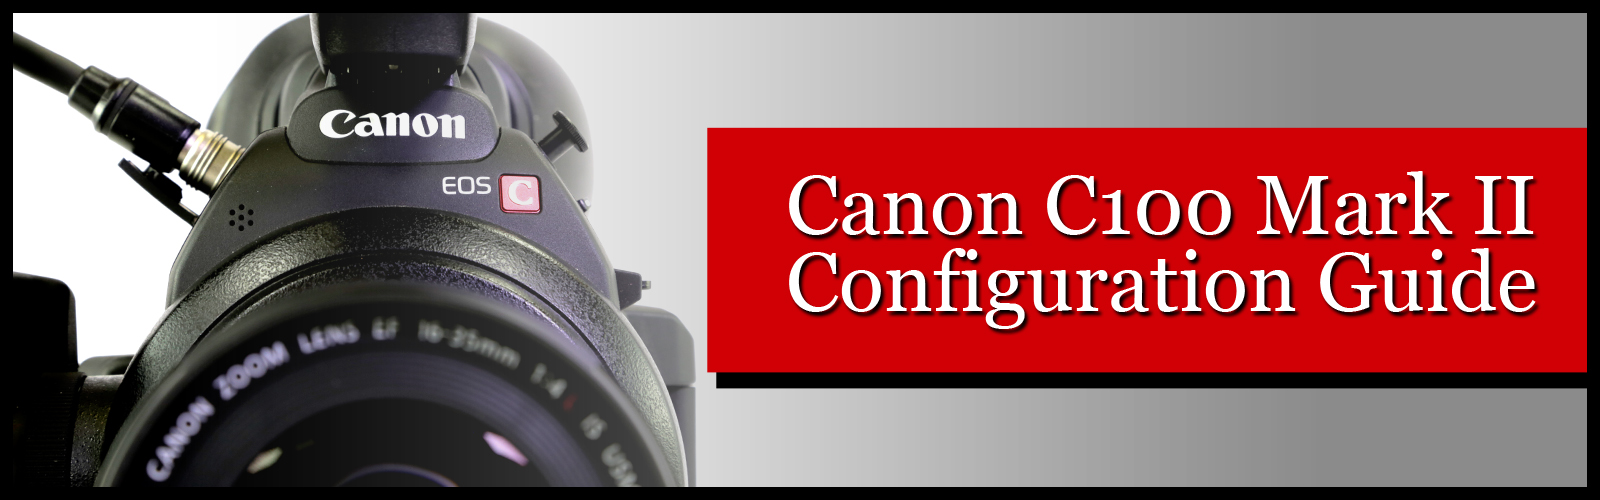 Canon C100 Mark II Configuration Guide